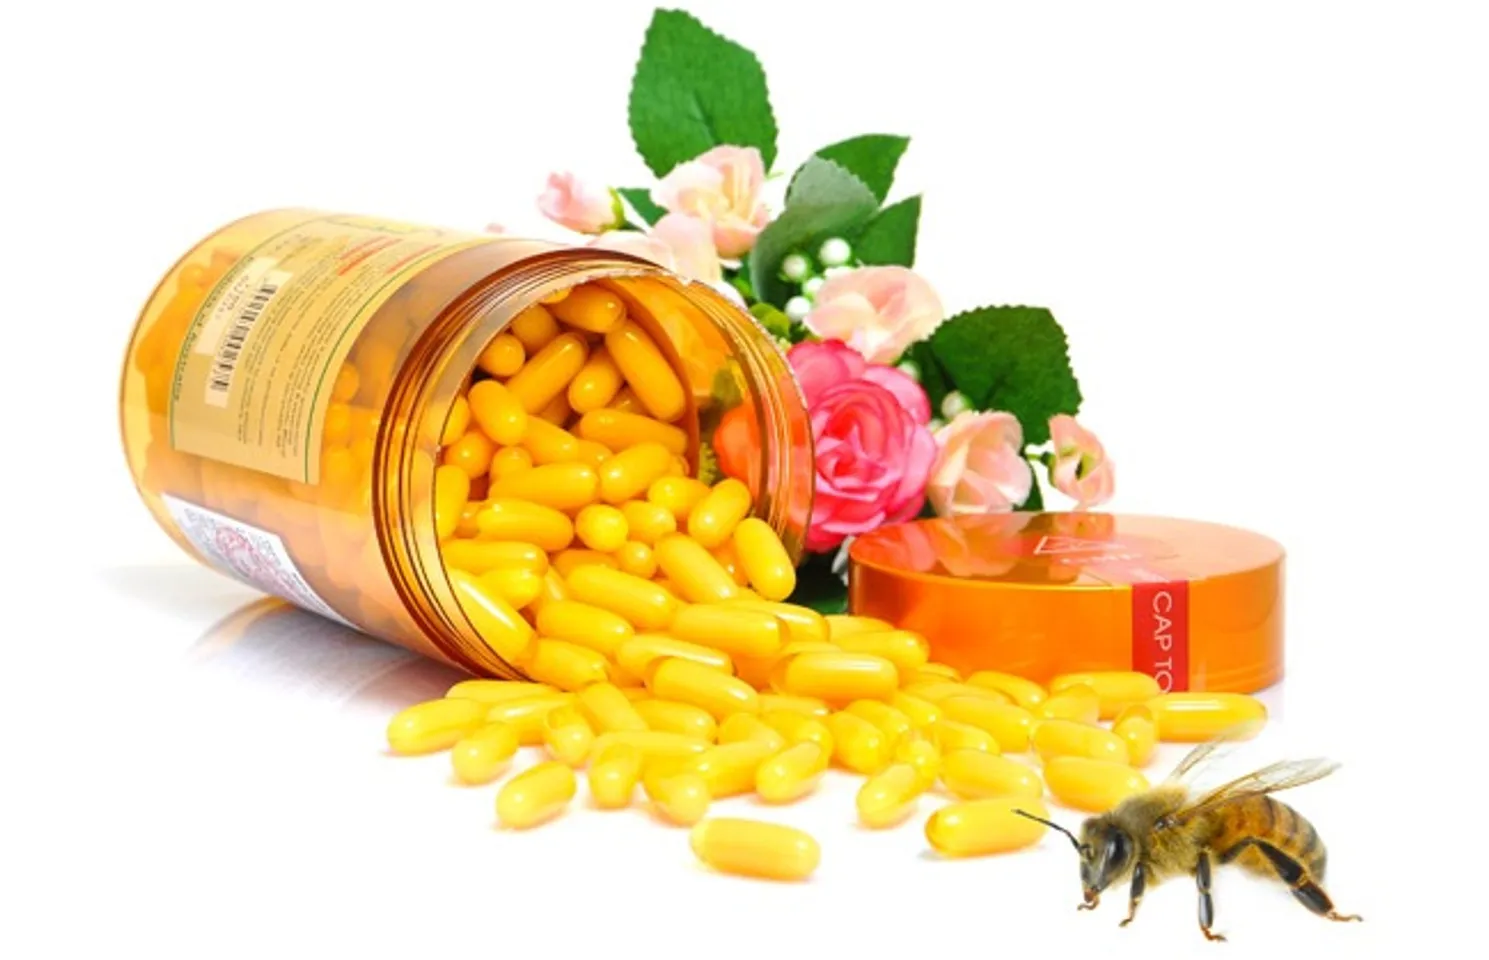 Sữa ong chúa Costar 1450mg được chiết xuất 100% sữa ong chúa tươi nguyên chất